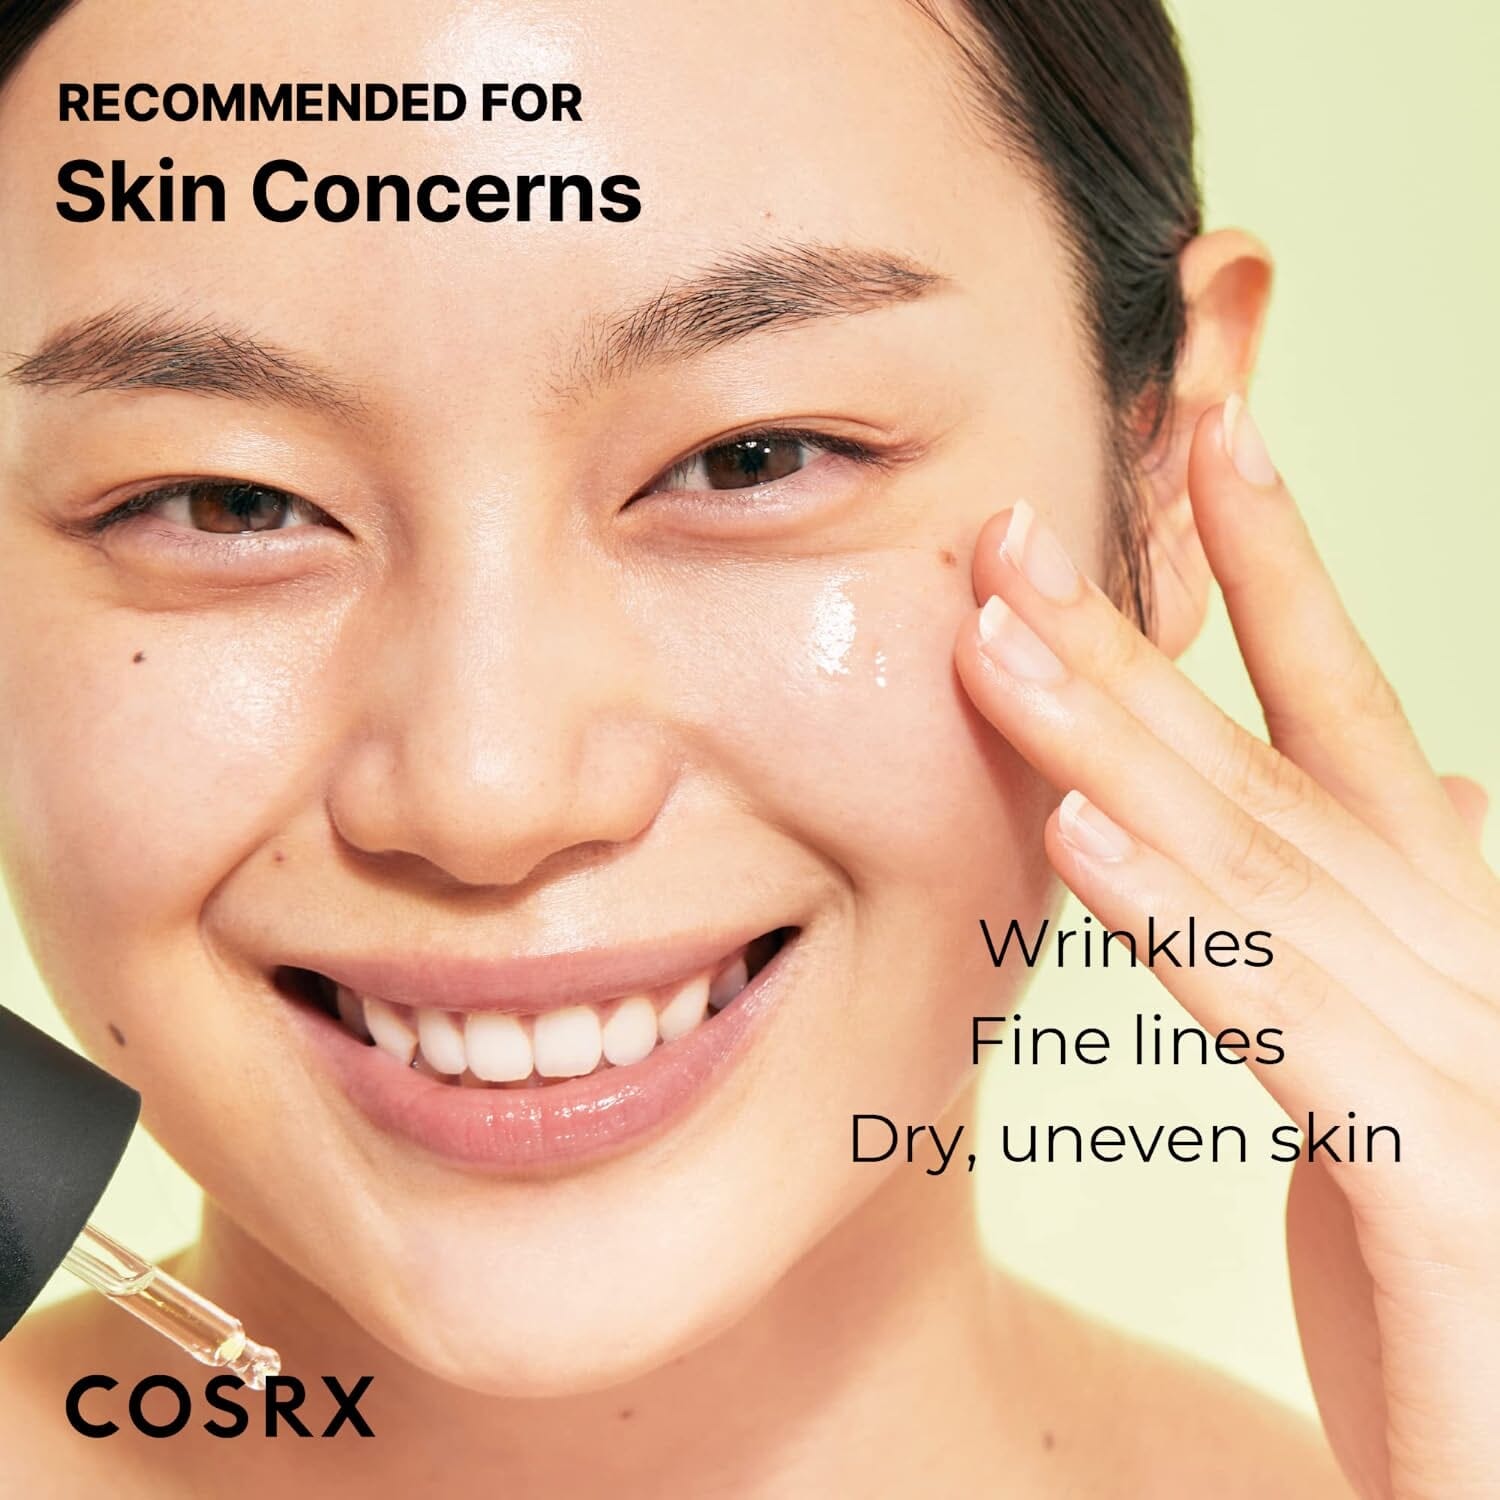 COSRX The Retinol 0.5 Oil Skin Care COSRX ORION XO Sri Lanka